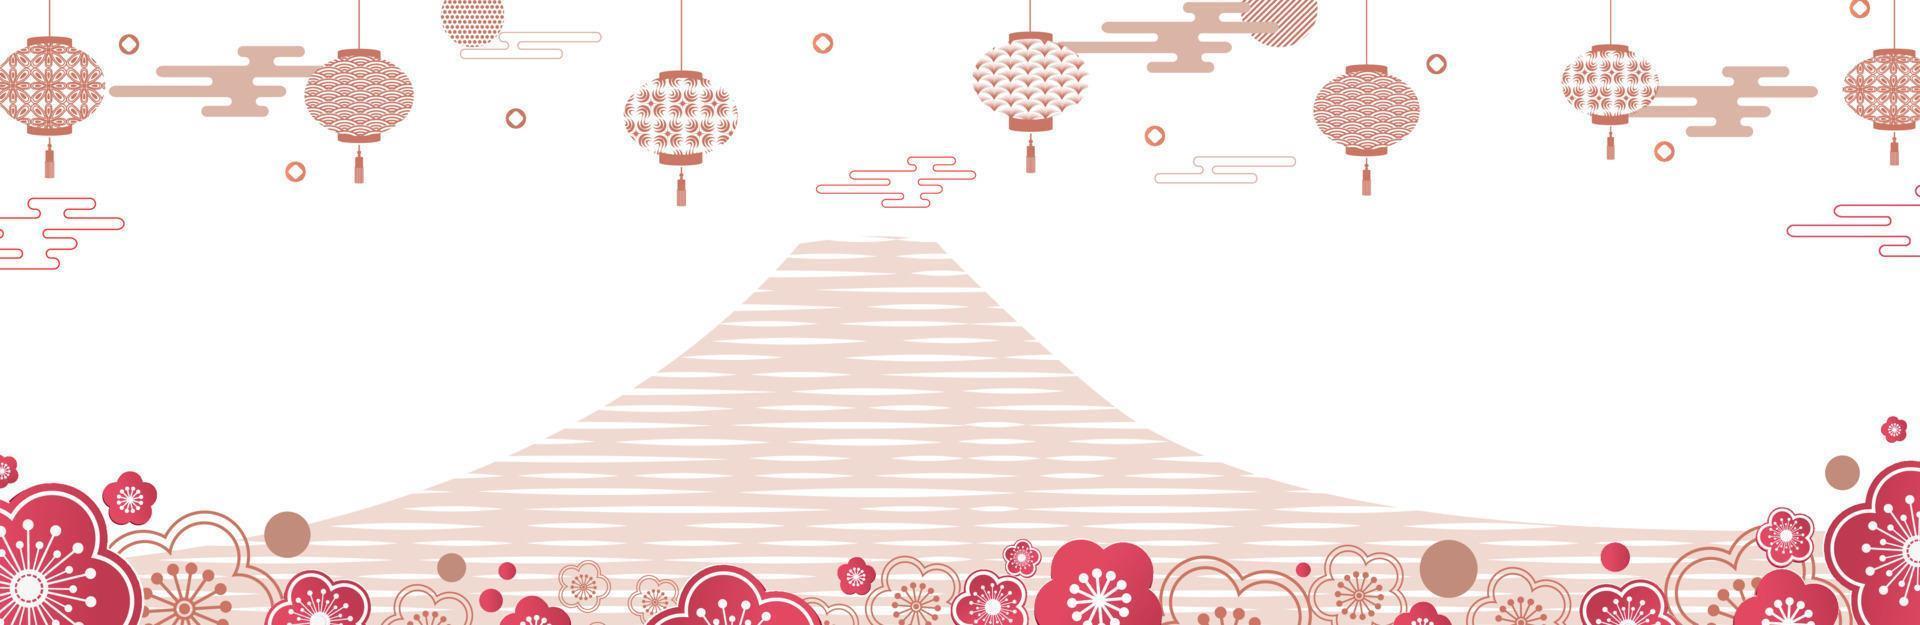 illustratie van een berg tussen bloemen, lantaarns en wolken. op de voorgrond zijn lentebloemen. Japanse en Chinese patronen. vlakke stijl. sjabloon voor een kerstkaart, banner, webpagina.vector vector